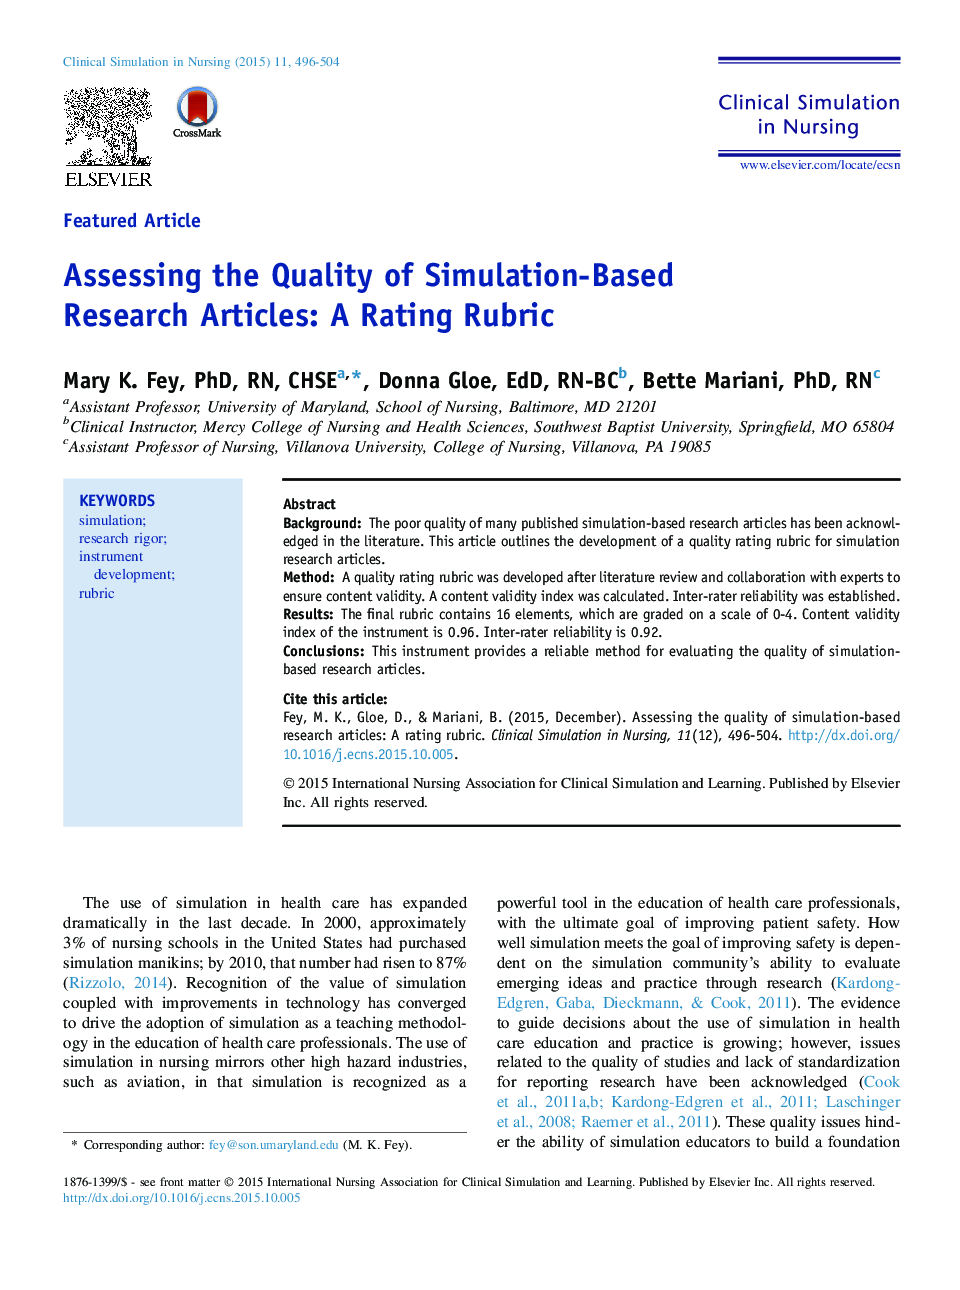 ارزیابی کیفیت مقالات پژوهشی مبتنی بر شبیه سازی: مقیاس رتبه بندی 